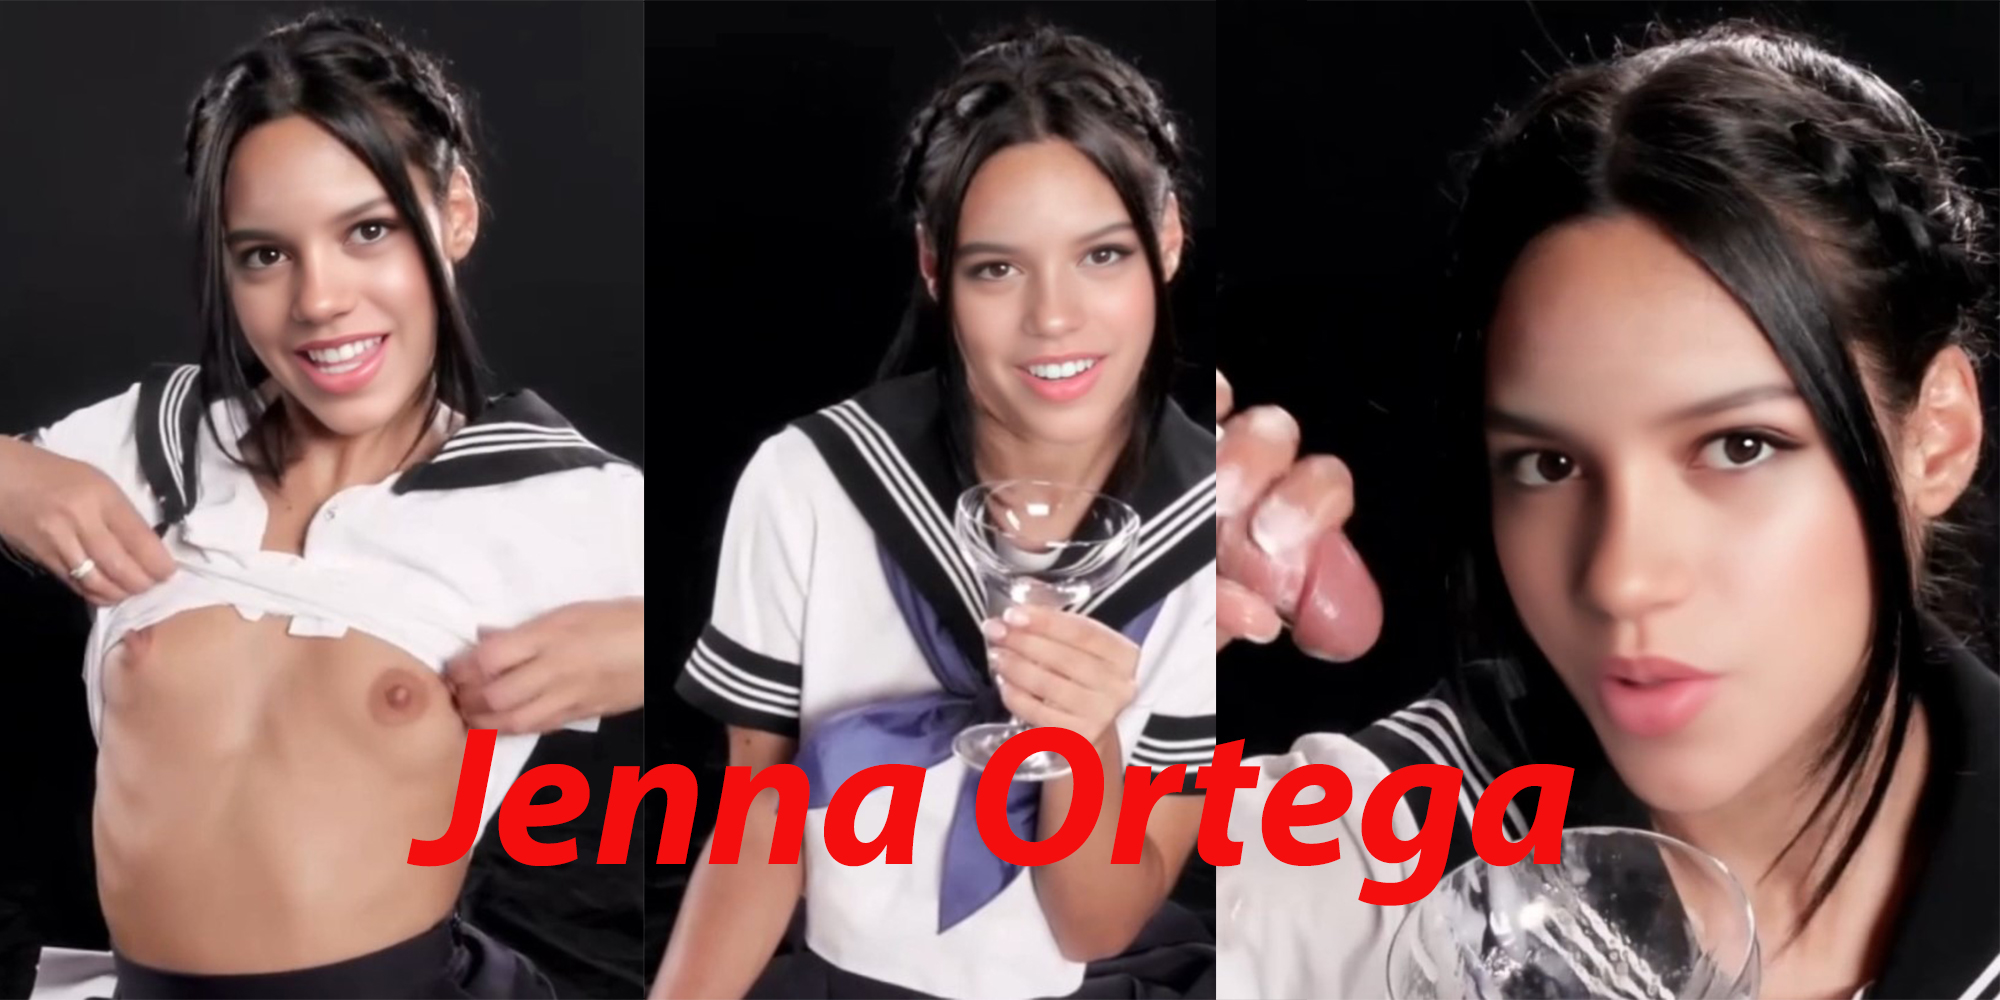 Does jenna ortega have a onlyfans